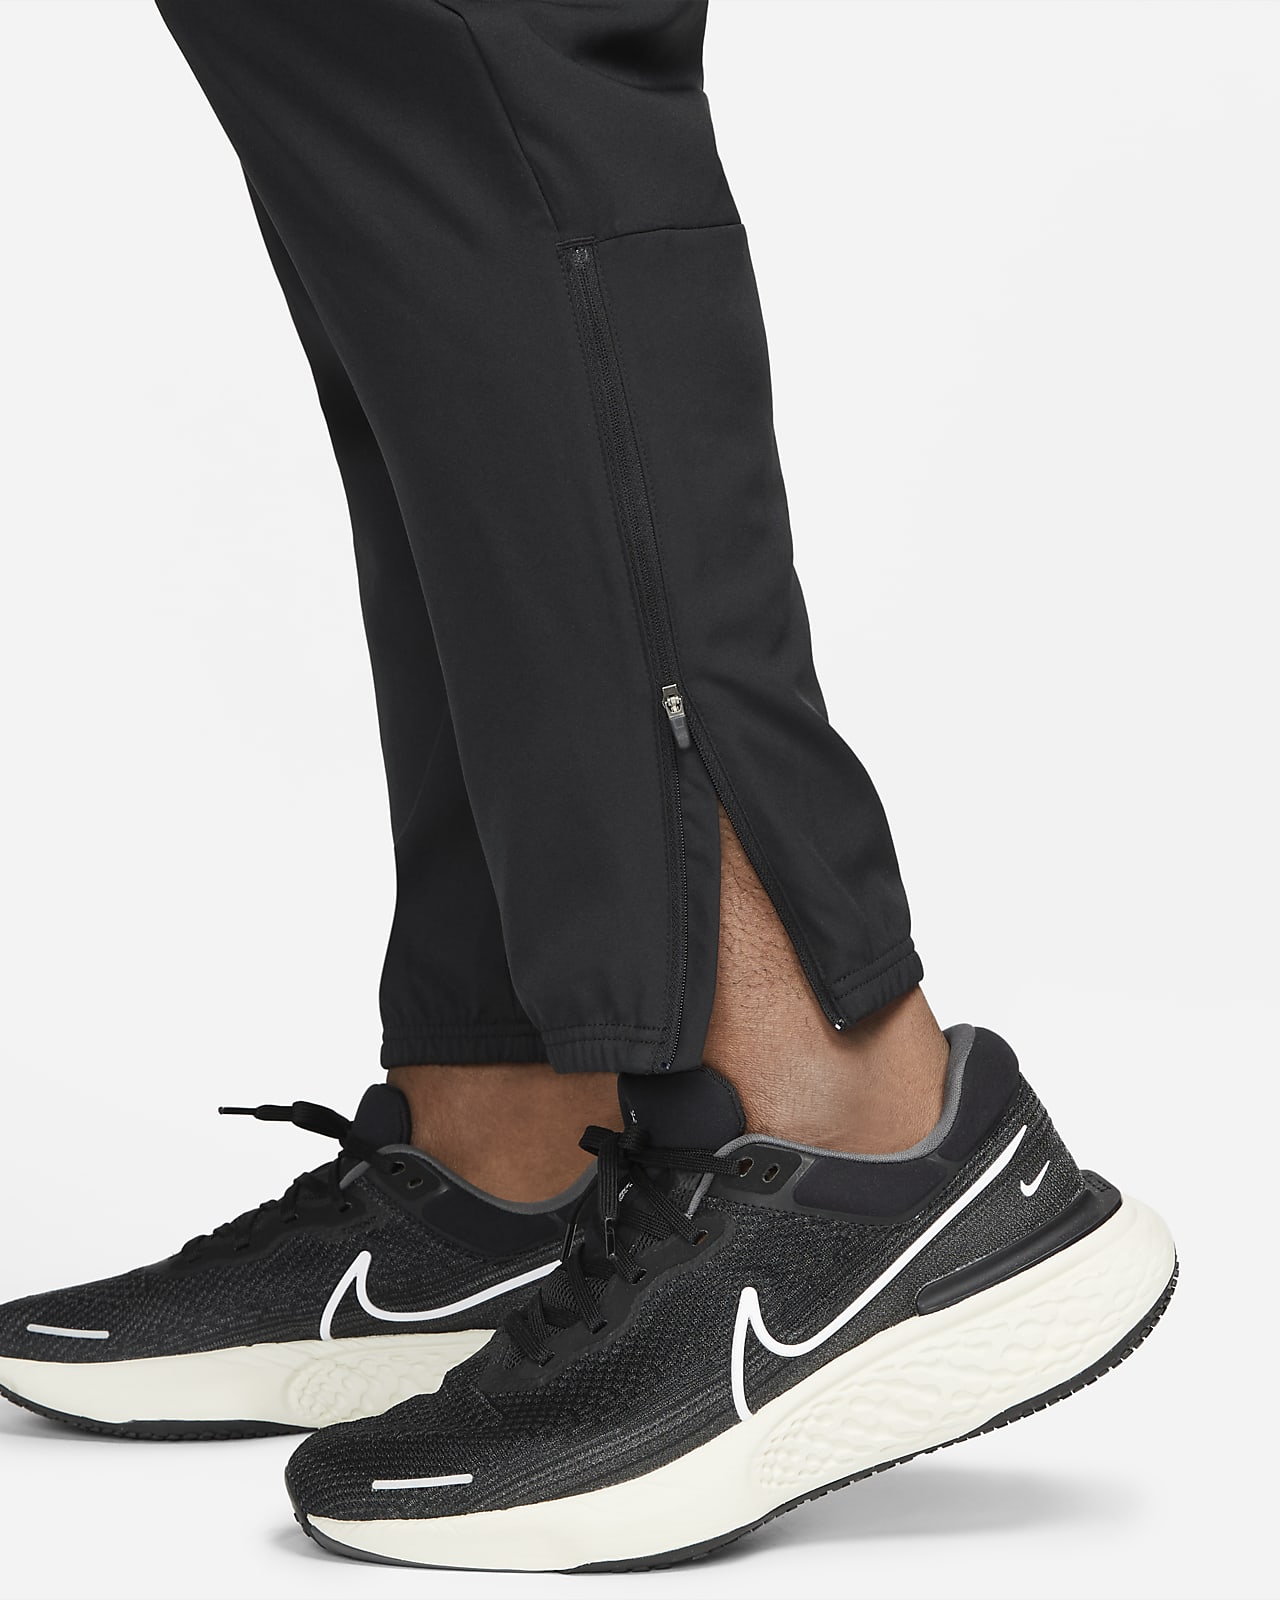 Legging Noir Homme Dri-FIT Challenger Nike